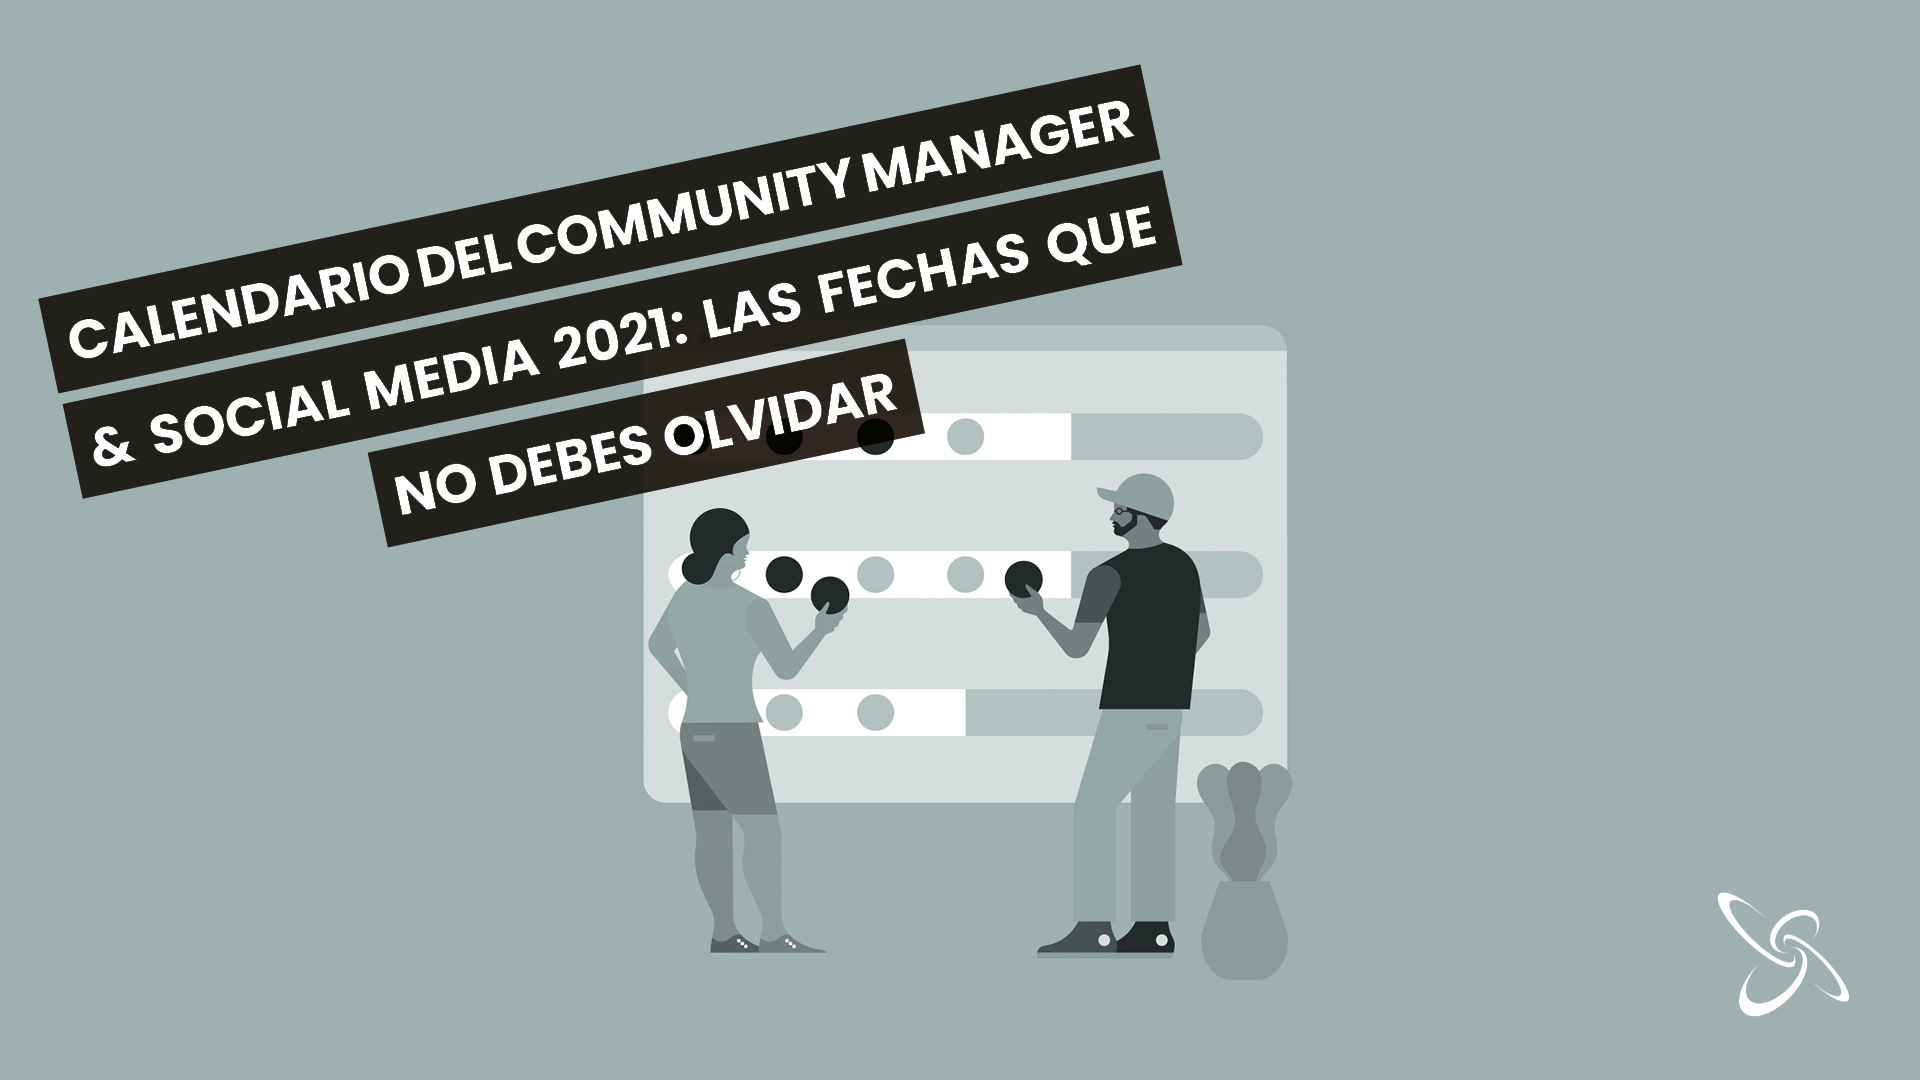 Calendario del Community Manager & Social Media 2021: las fechas que no debes olvidar